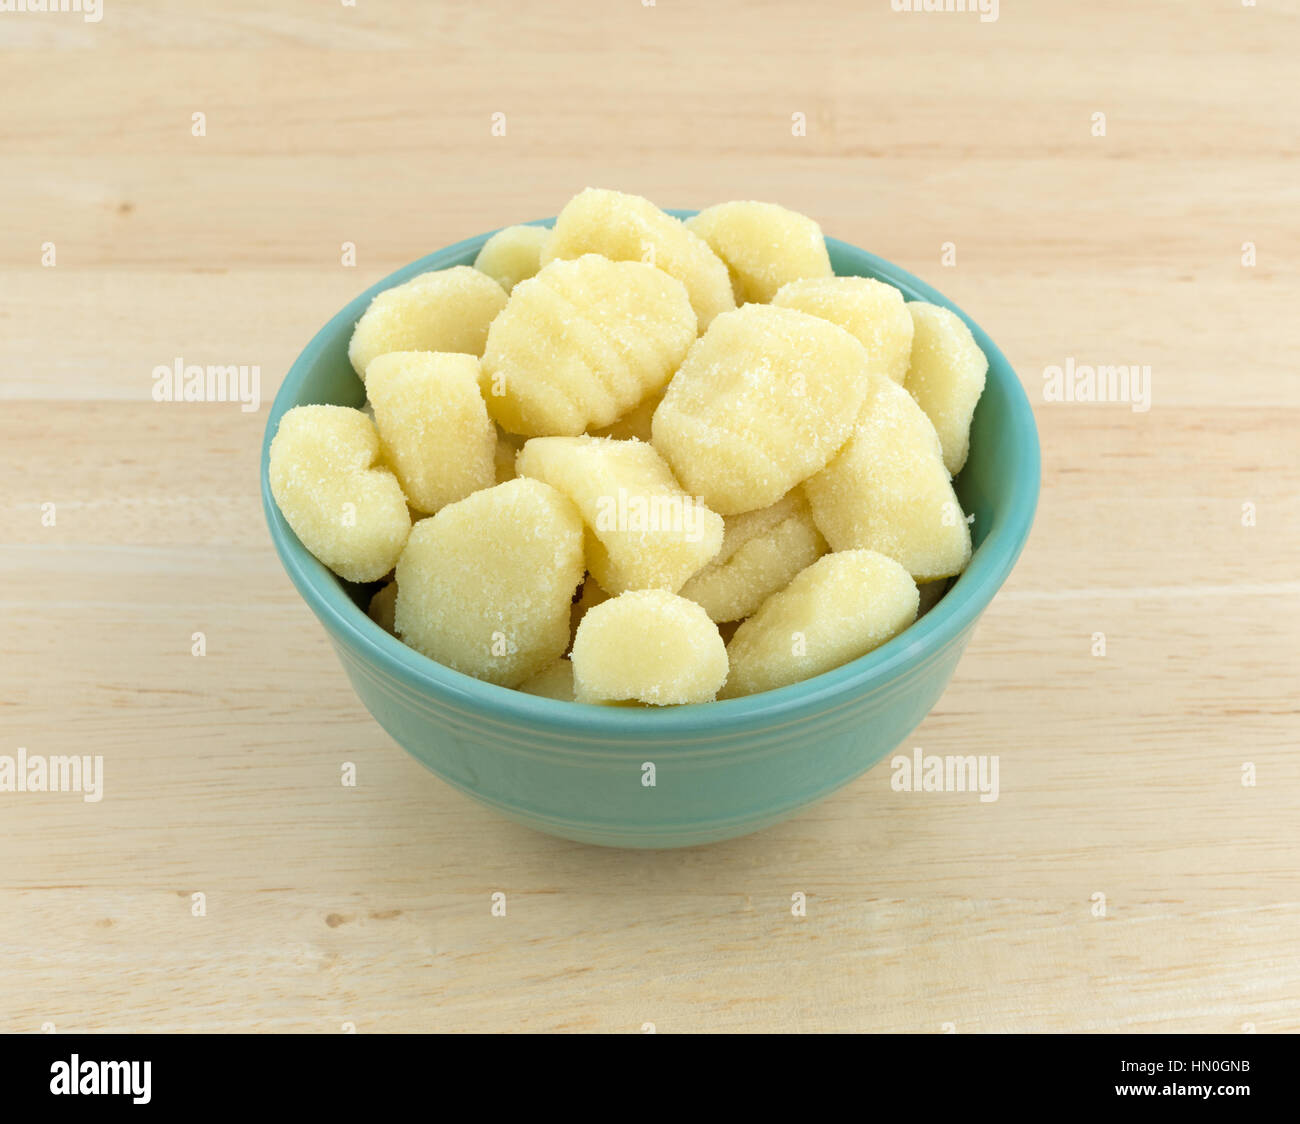 Plain gnocchi di patate in una ciotola verde sulla cima di un tavolo di legno. Foto Stock